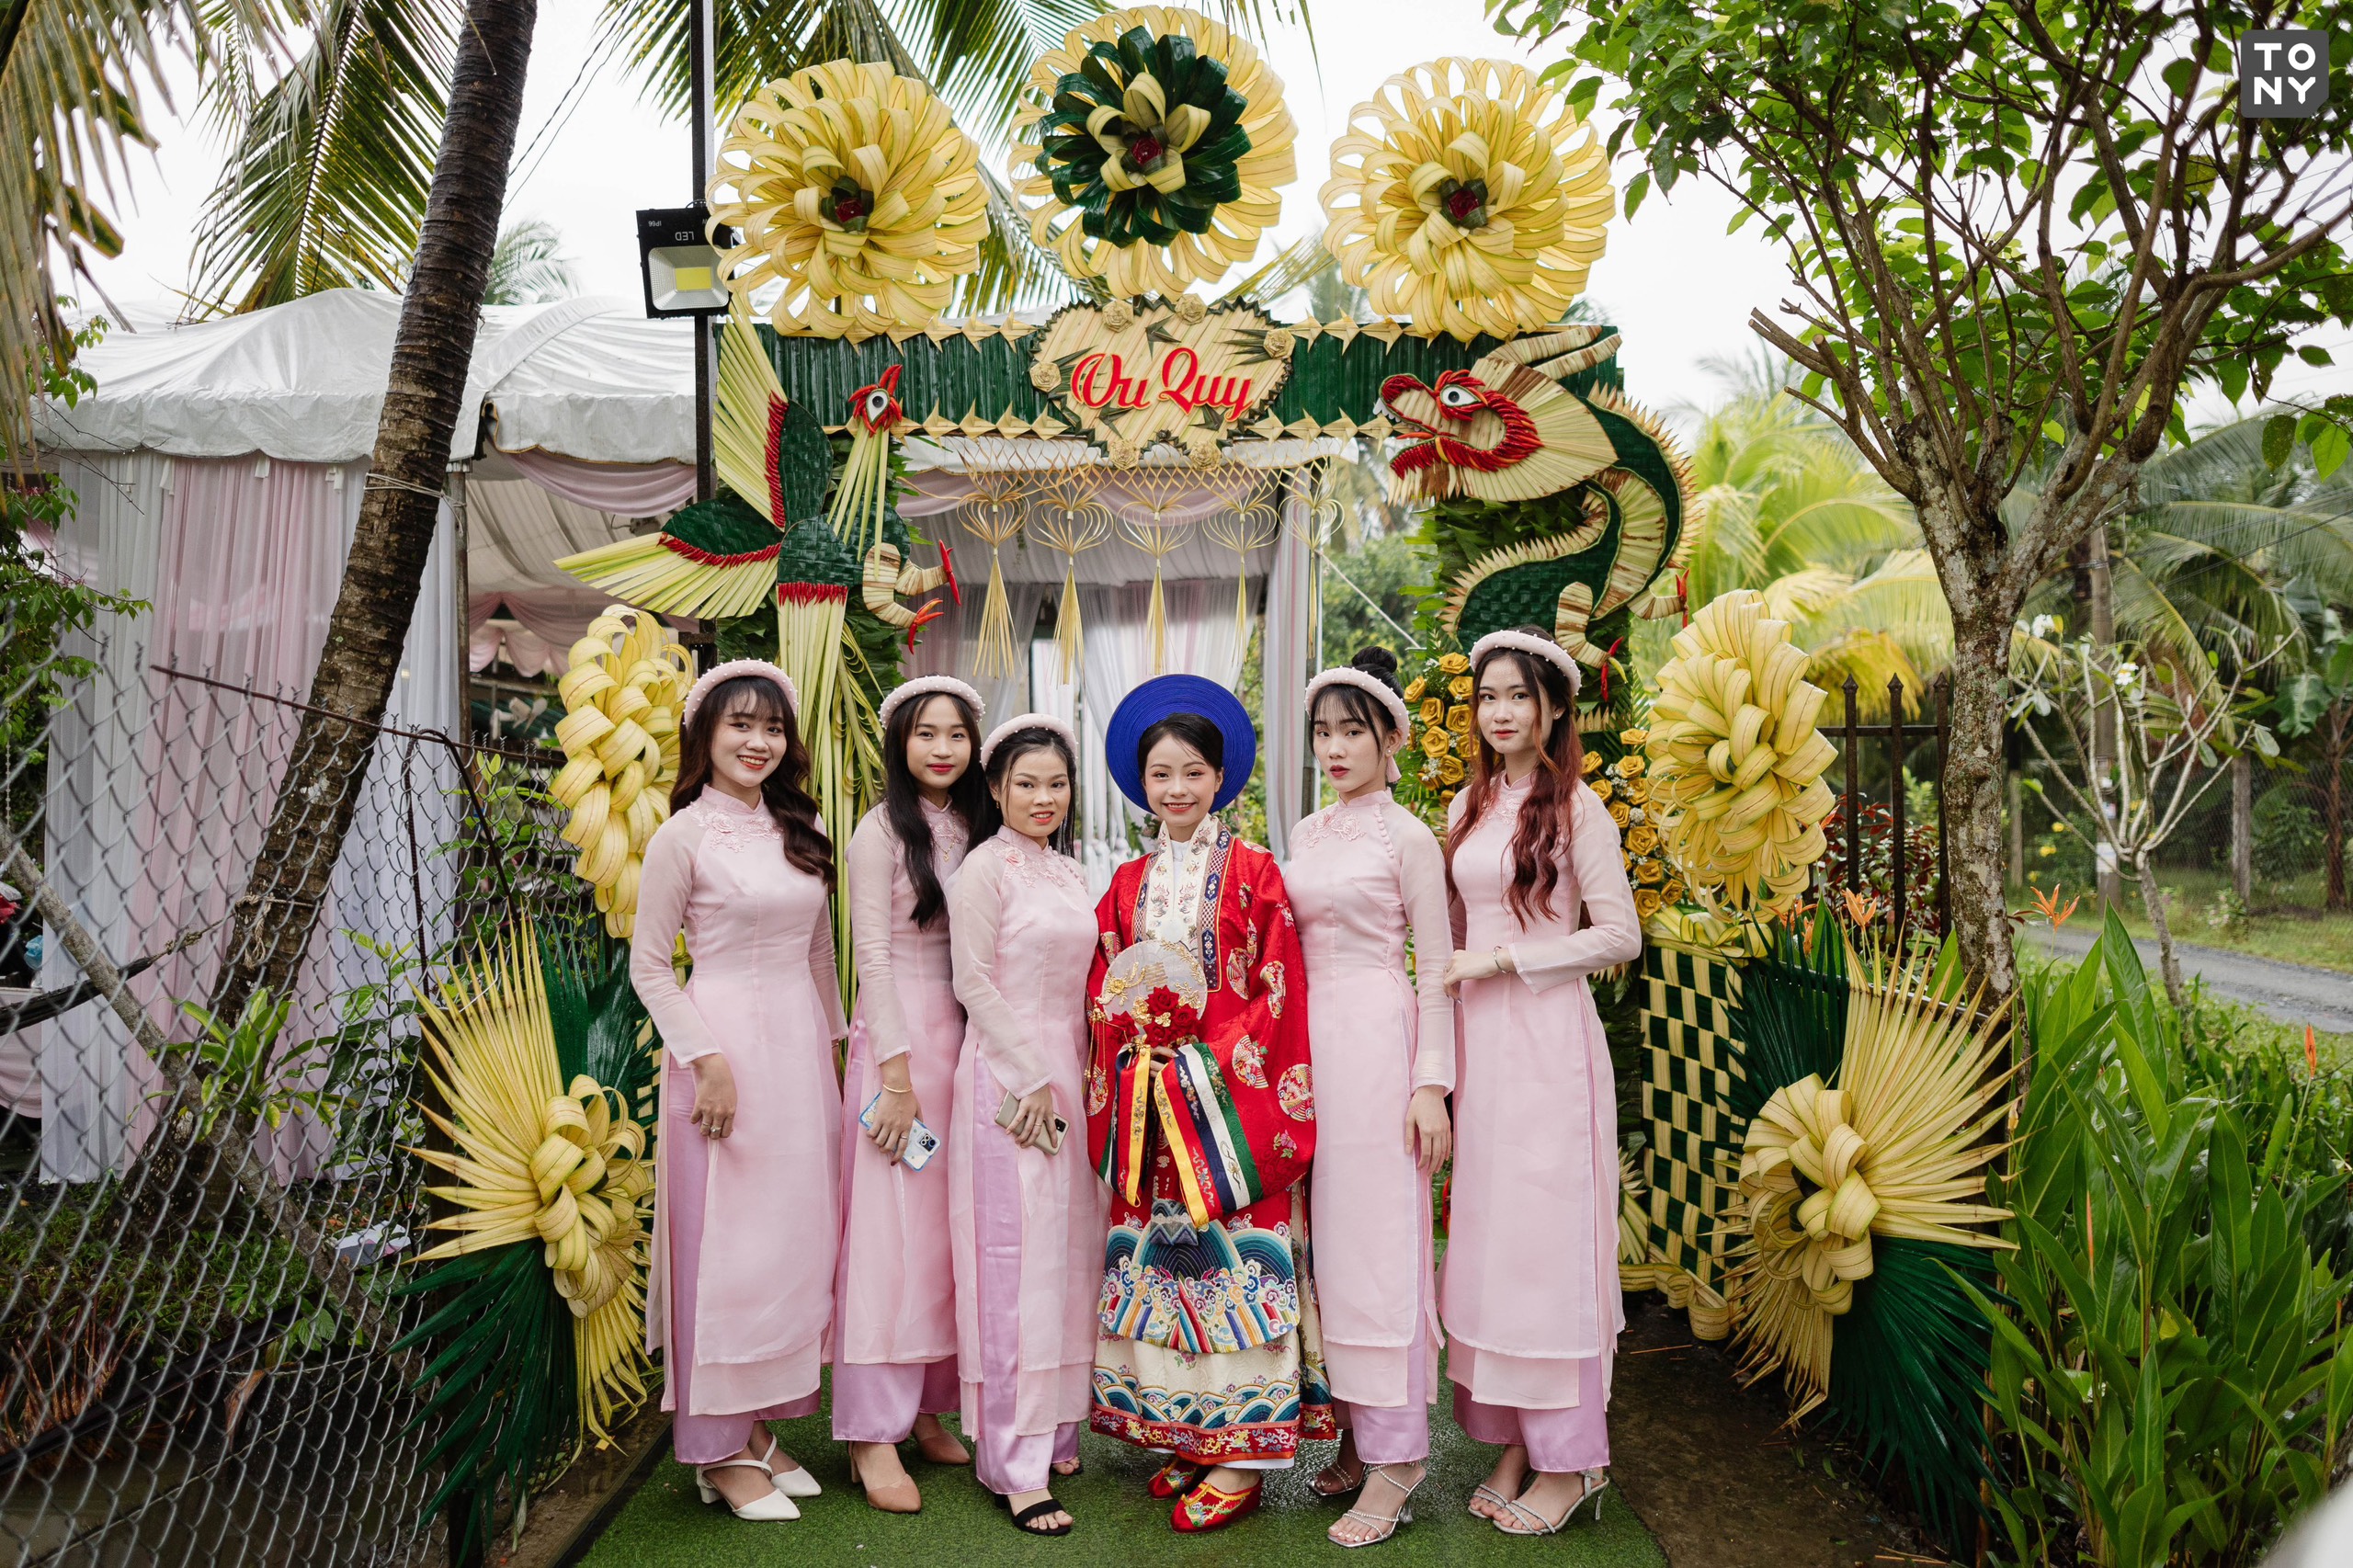 Cổng cưới lá dừa  Đậm chất miền Tây Nam bộ  LONG AN TV  YouTube